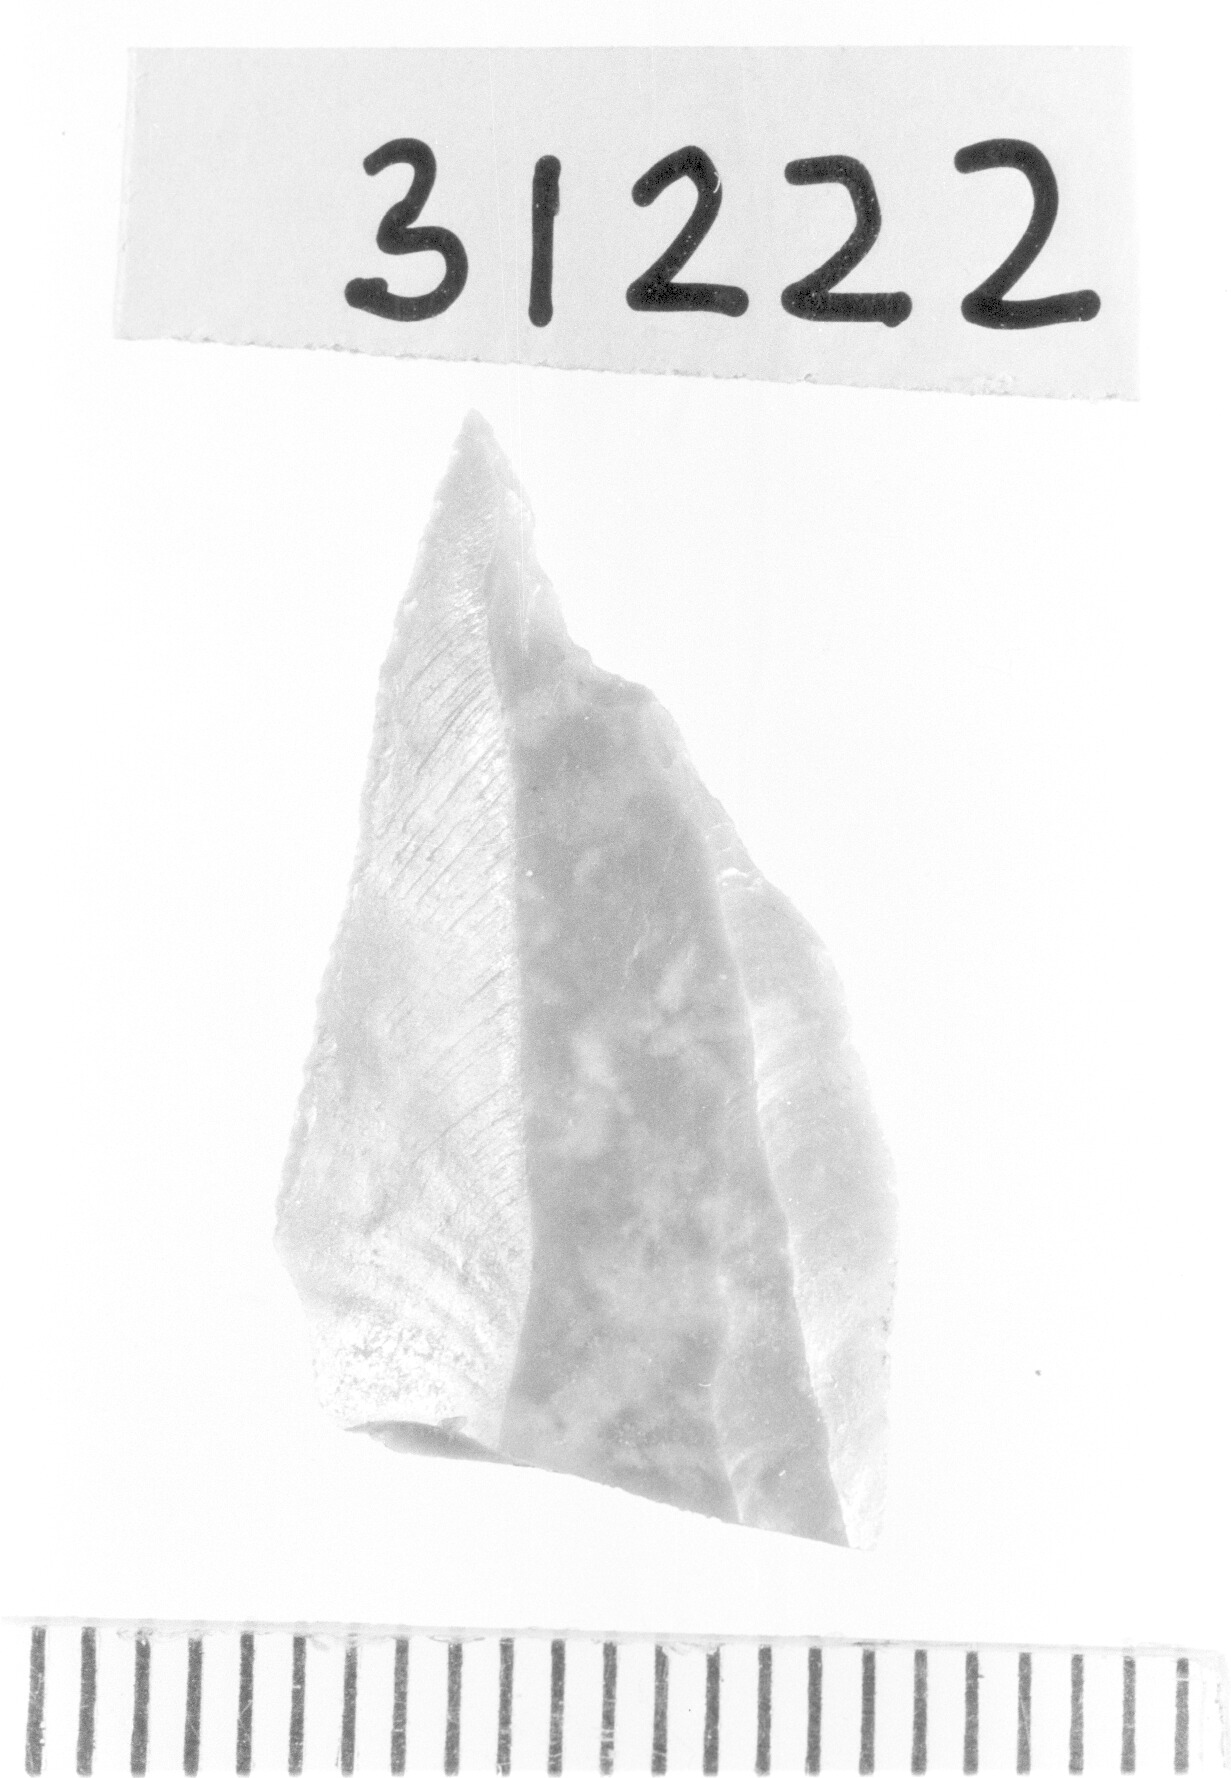 becco troncatura/ frammento - Gravettiano (Paleolitico superiore)